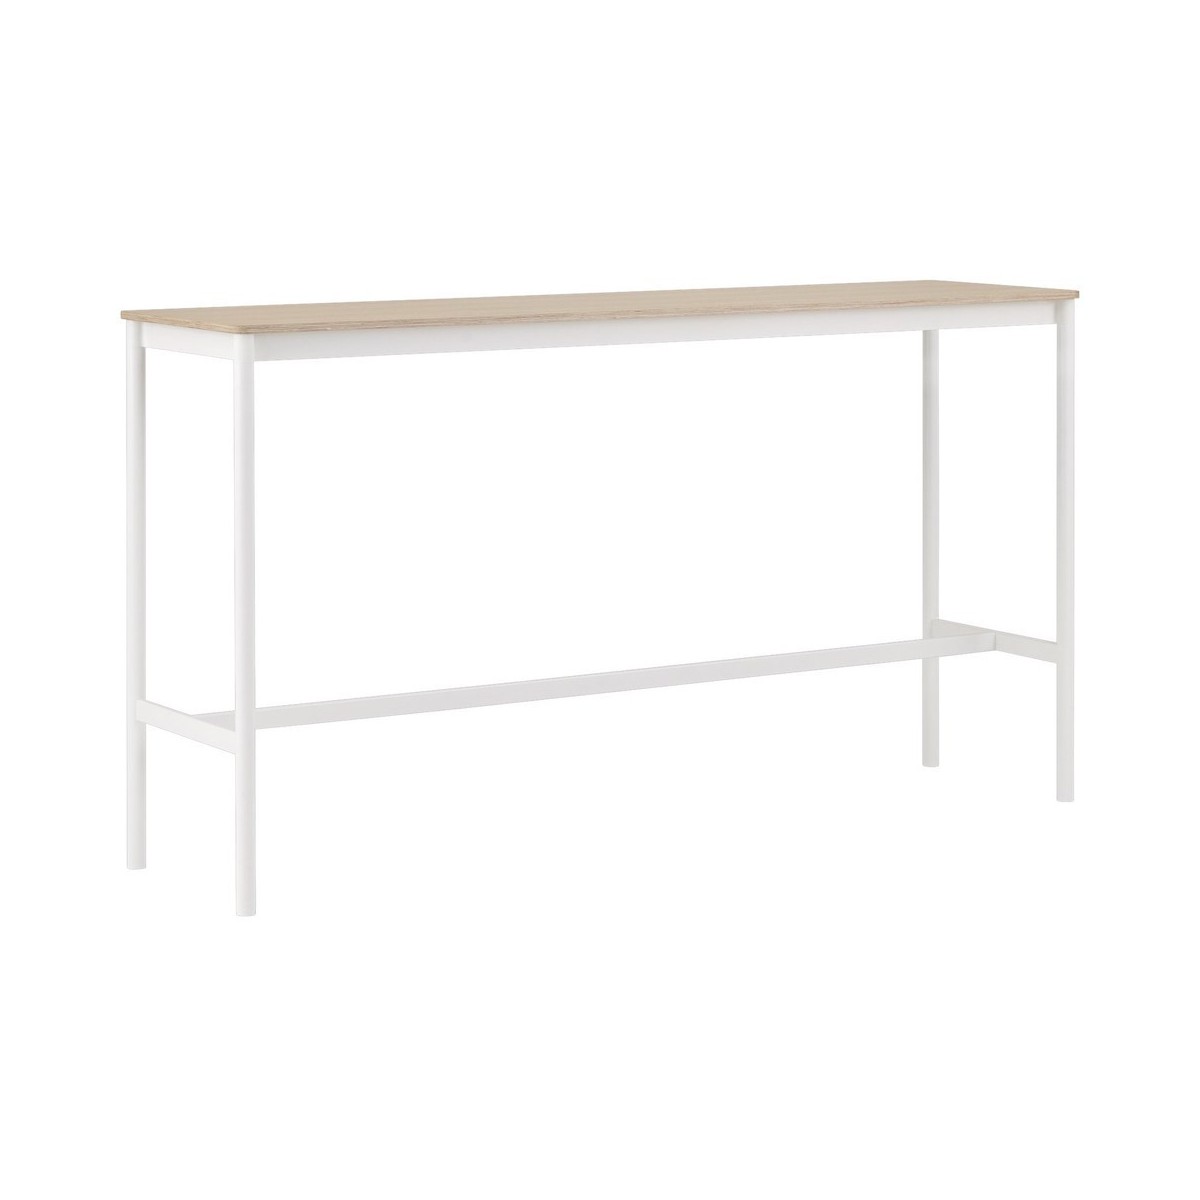 H105x190x85 - white/oak - high table Base